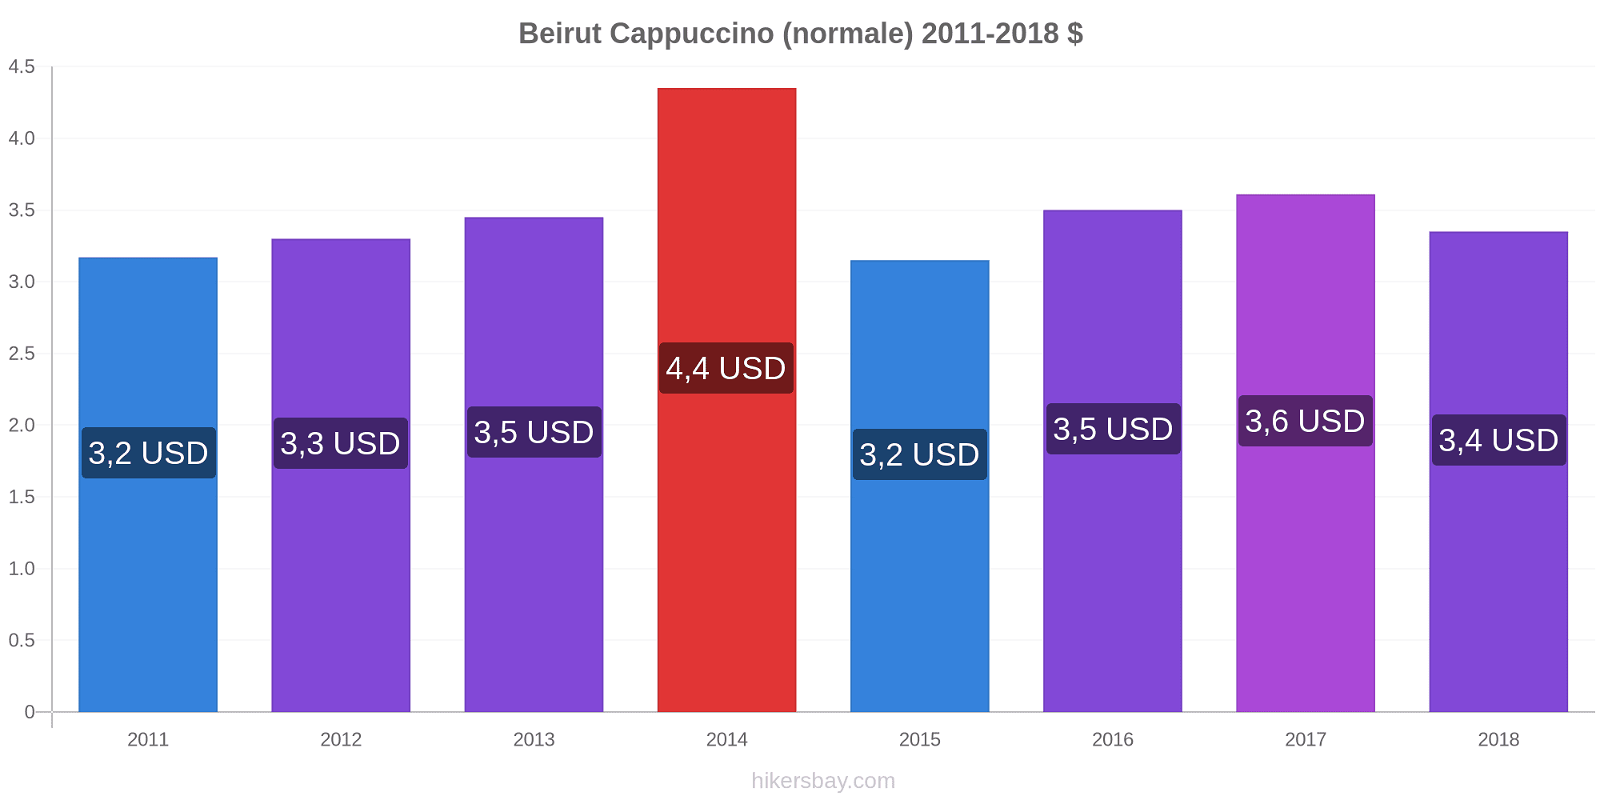 Beirut variazioni di prezzo Cappuccino (normale) hikersbay.com